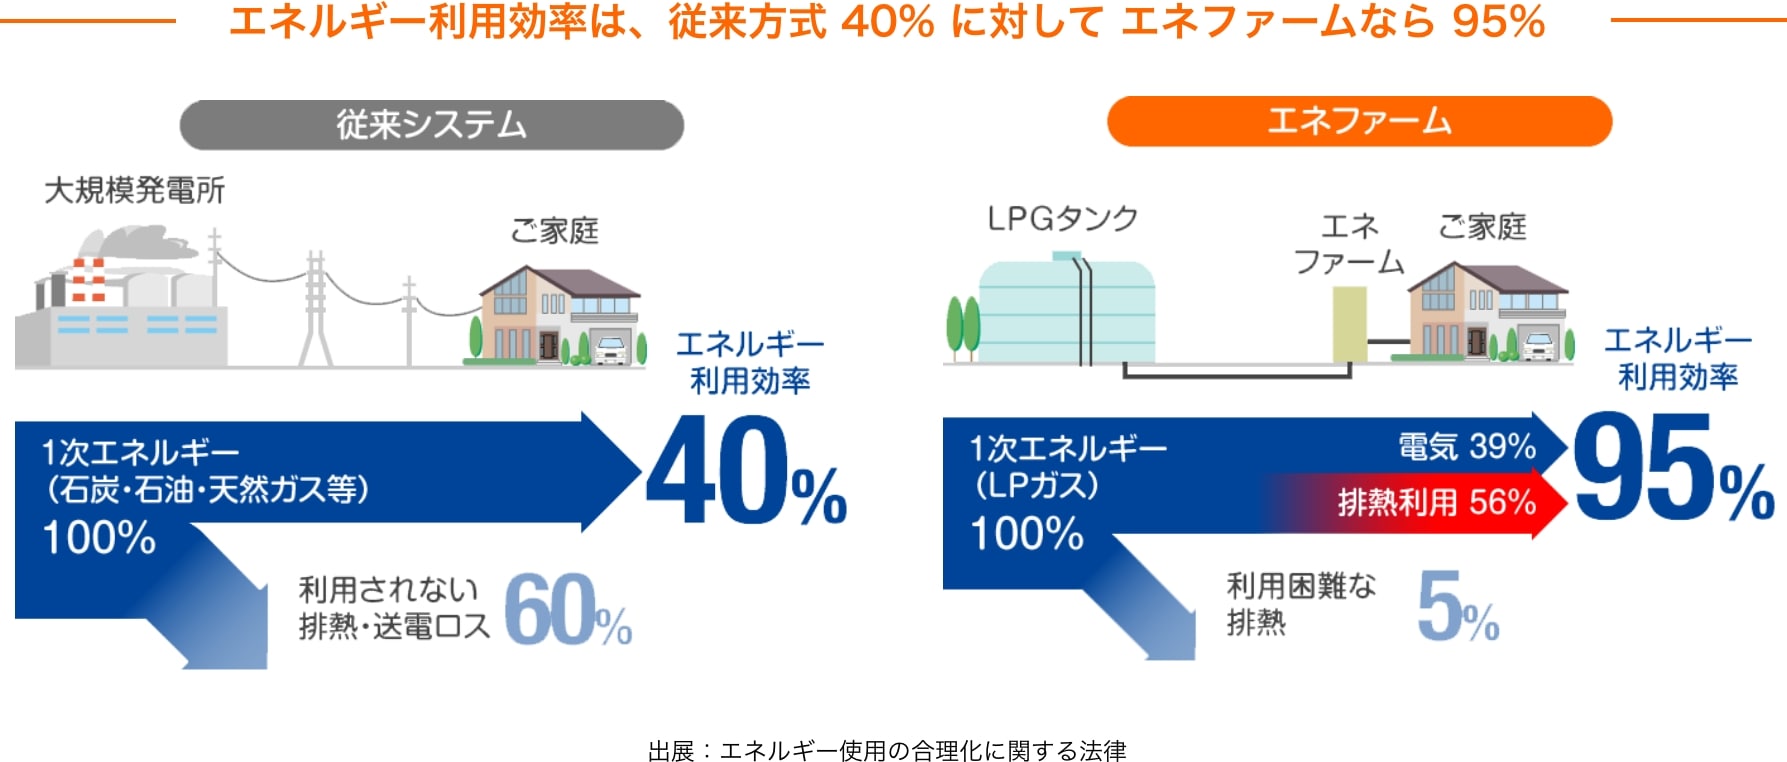 送電ロスが少ないためエネルギー利用効率は、従来方式 40%に対して エネファームなら95%